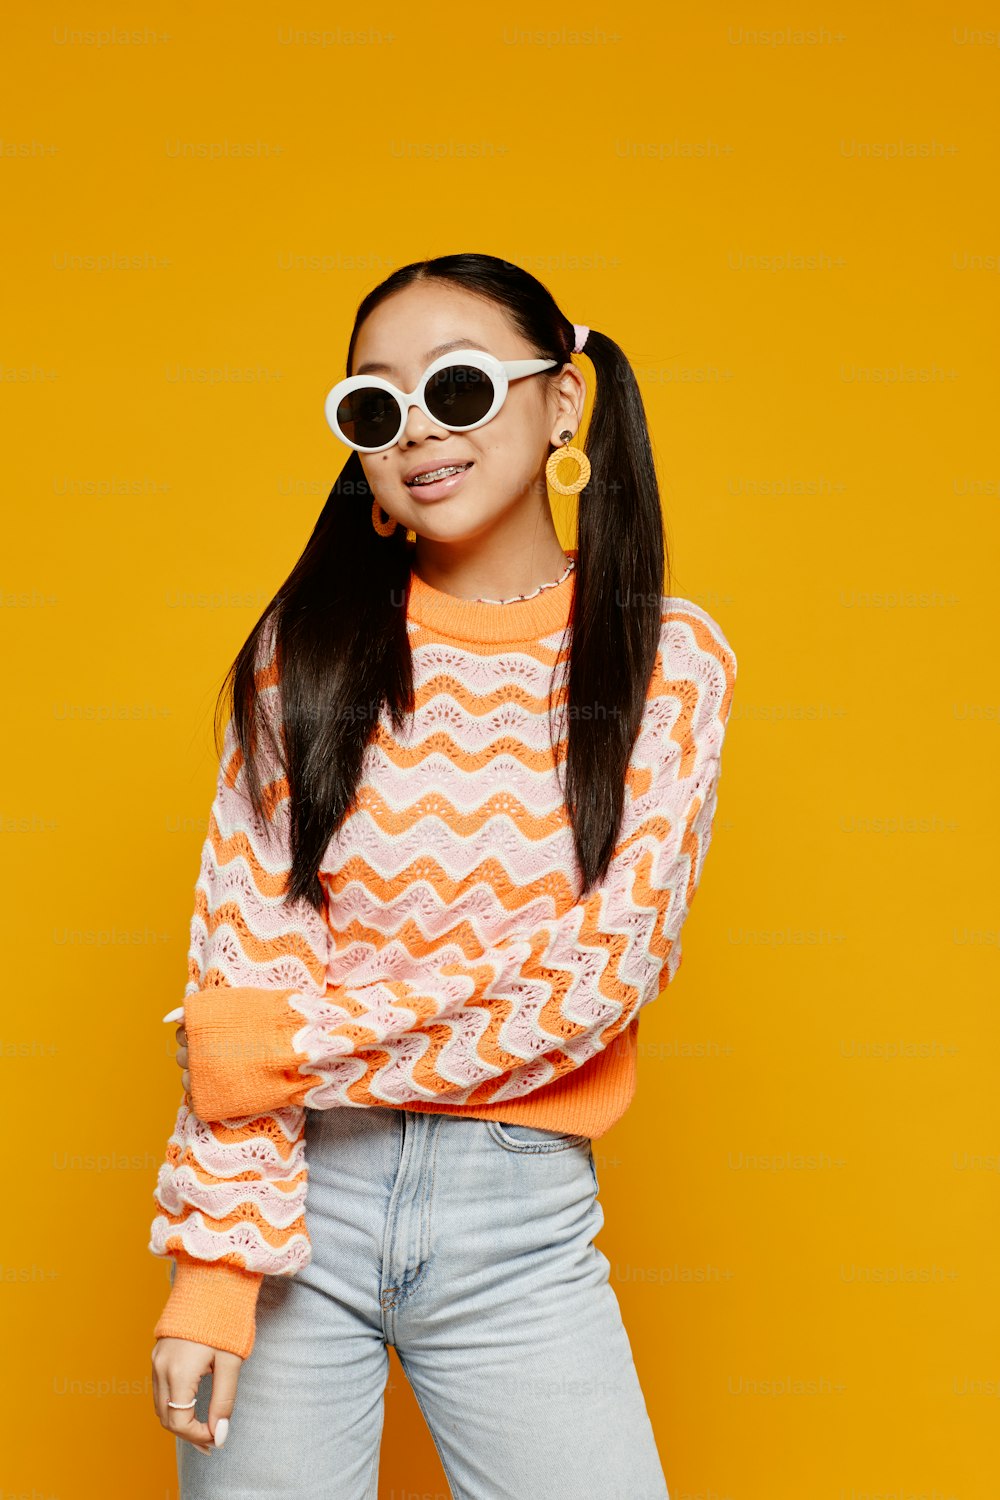 Ritratto verticale della ragazza asiatica adolescente che porta occhiali da sole bianchi su sfondo giallo vibrante